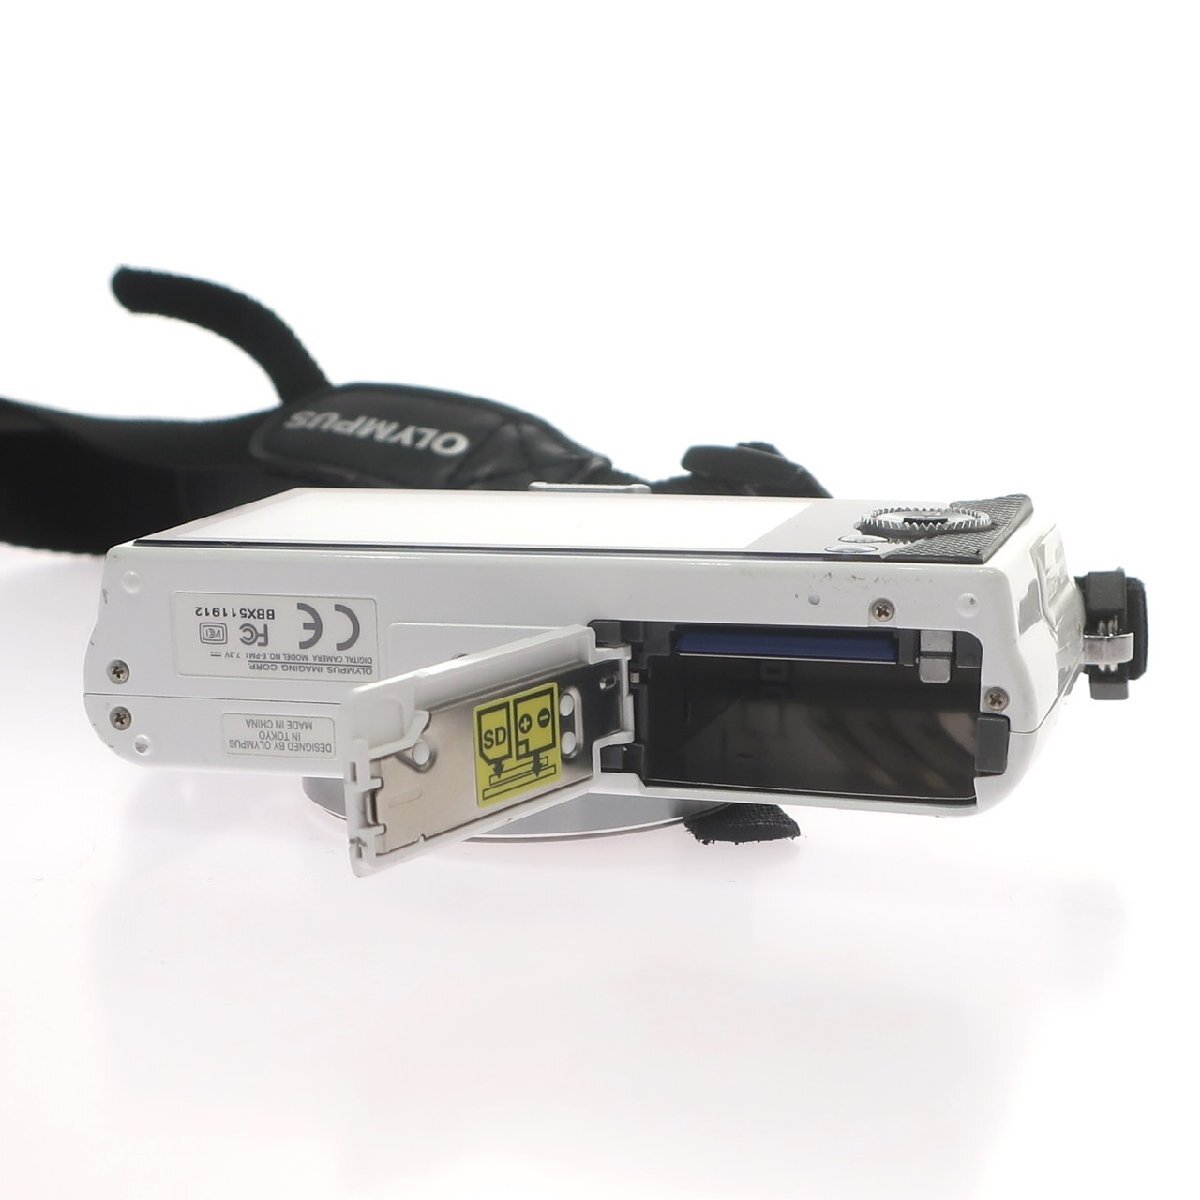 1 иен старт OLYMPUS Olympus IMAGING CORP E-PM1 беззеркальный однообъективный компактный цифровой фотоаппарат цифровая камера бытовая техника белый работоспособность не проверялась 